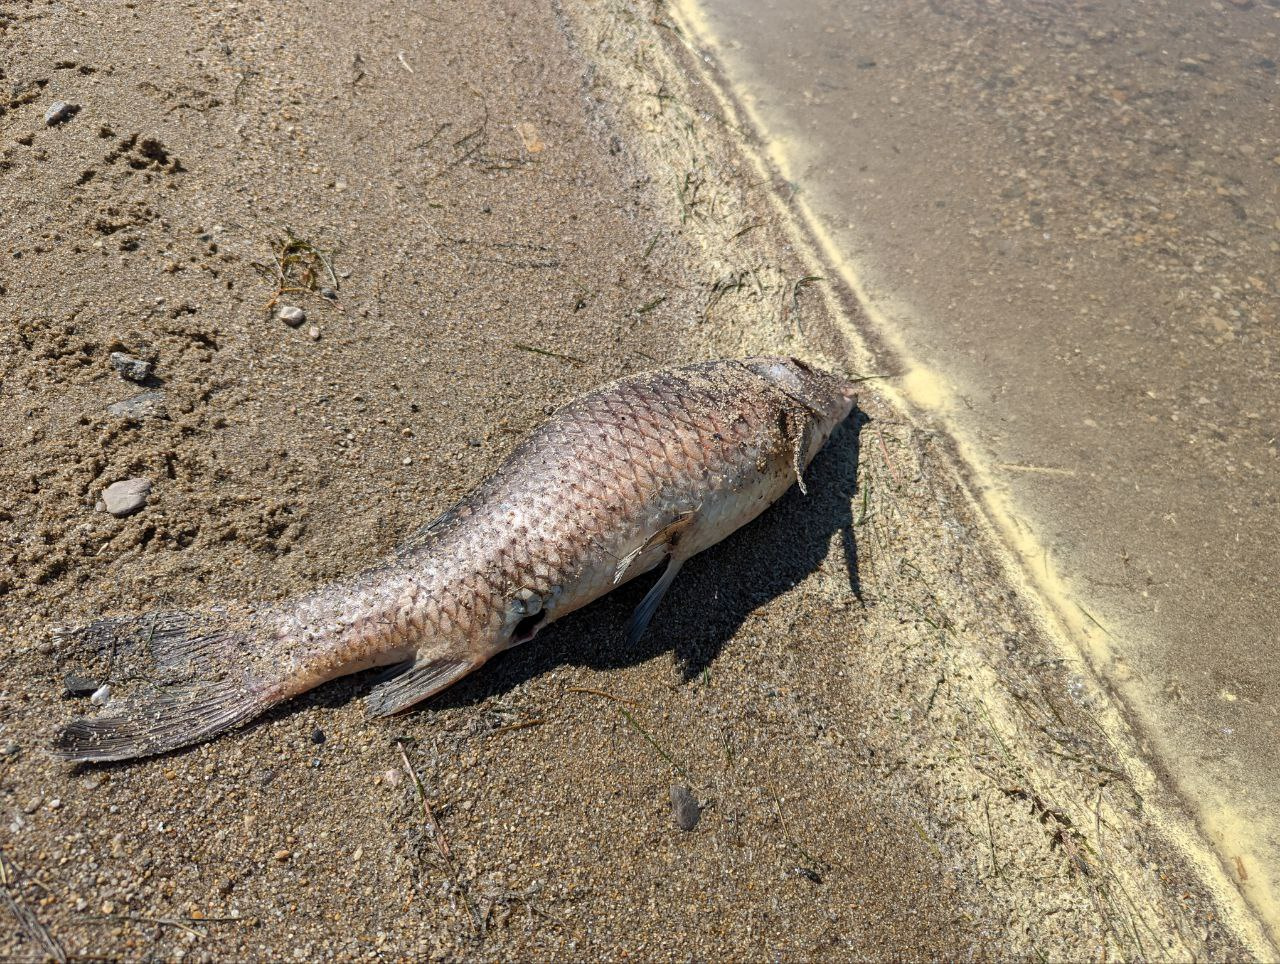 Читинцы жалуются на дохлую рыбу на городском пляже